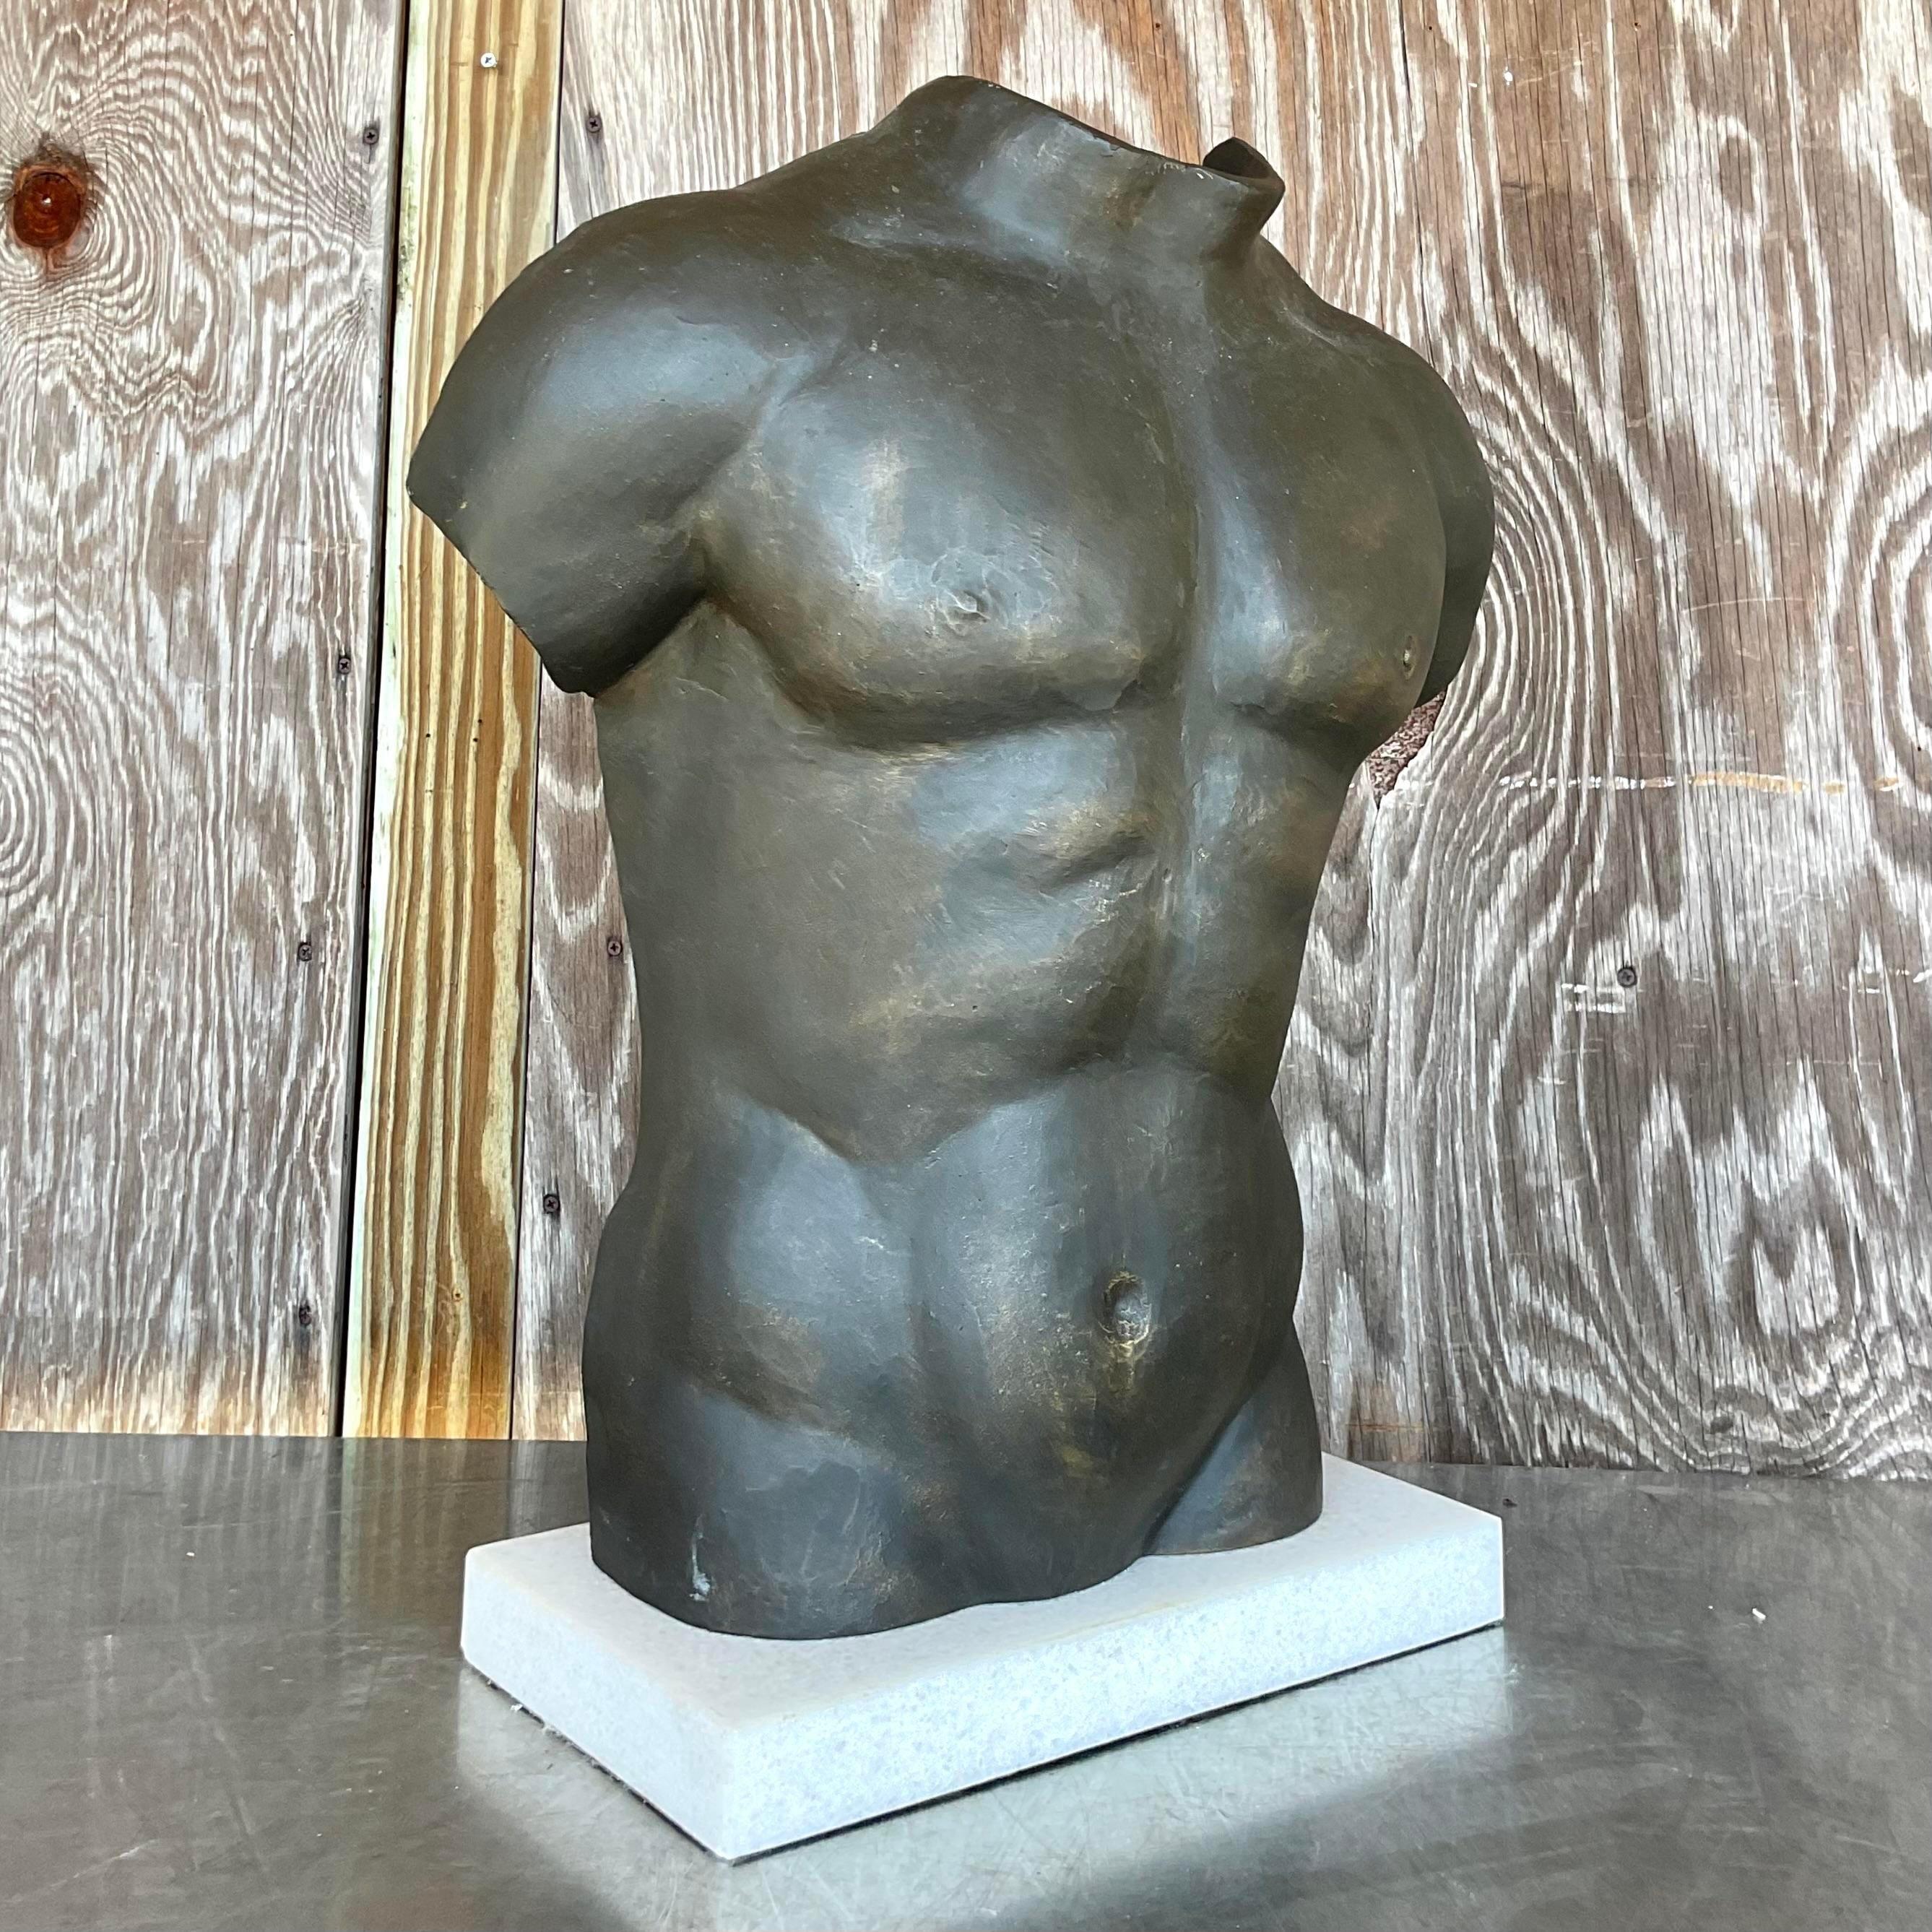 Lassen Sie sich von der rauen Schönheit dieser patinierten Vintage-Boho-Skulptur eines männlichen Torsos verzaubern - eine exquisite Verschmelzung von amerikanischer Handwerkskunst und böhmischer Sensibilität. Mit ihrer verwitterten Patina und ihrer